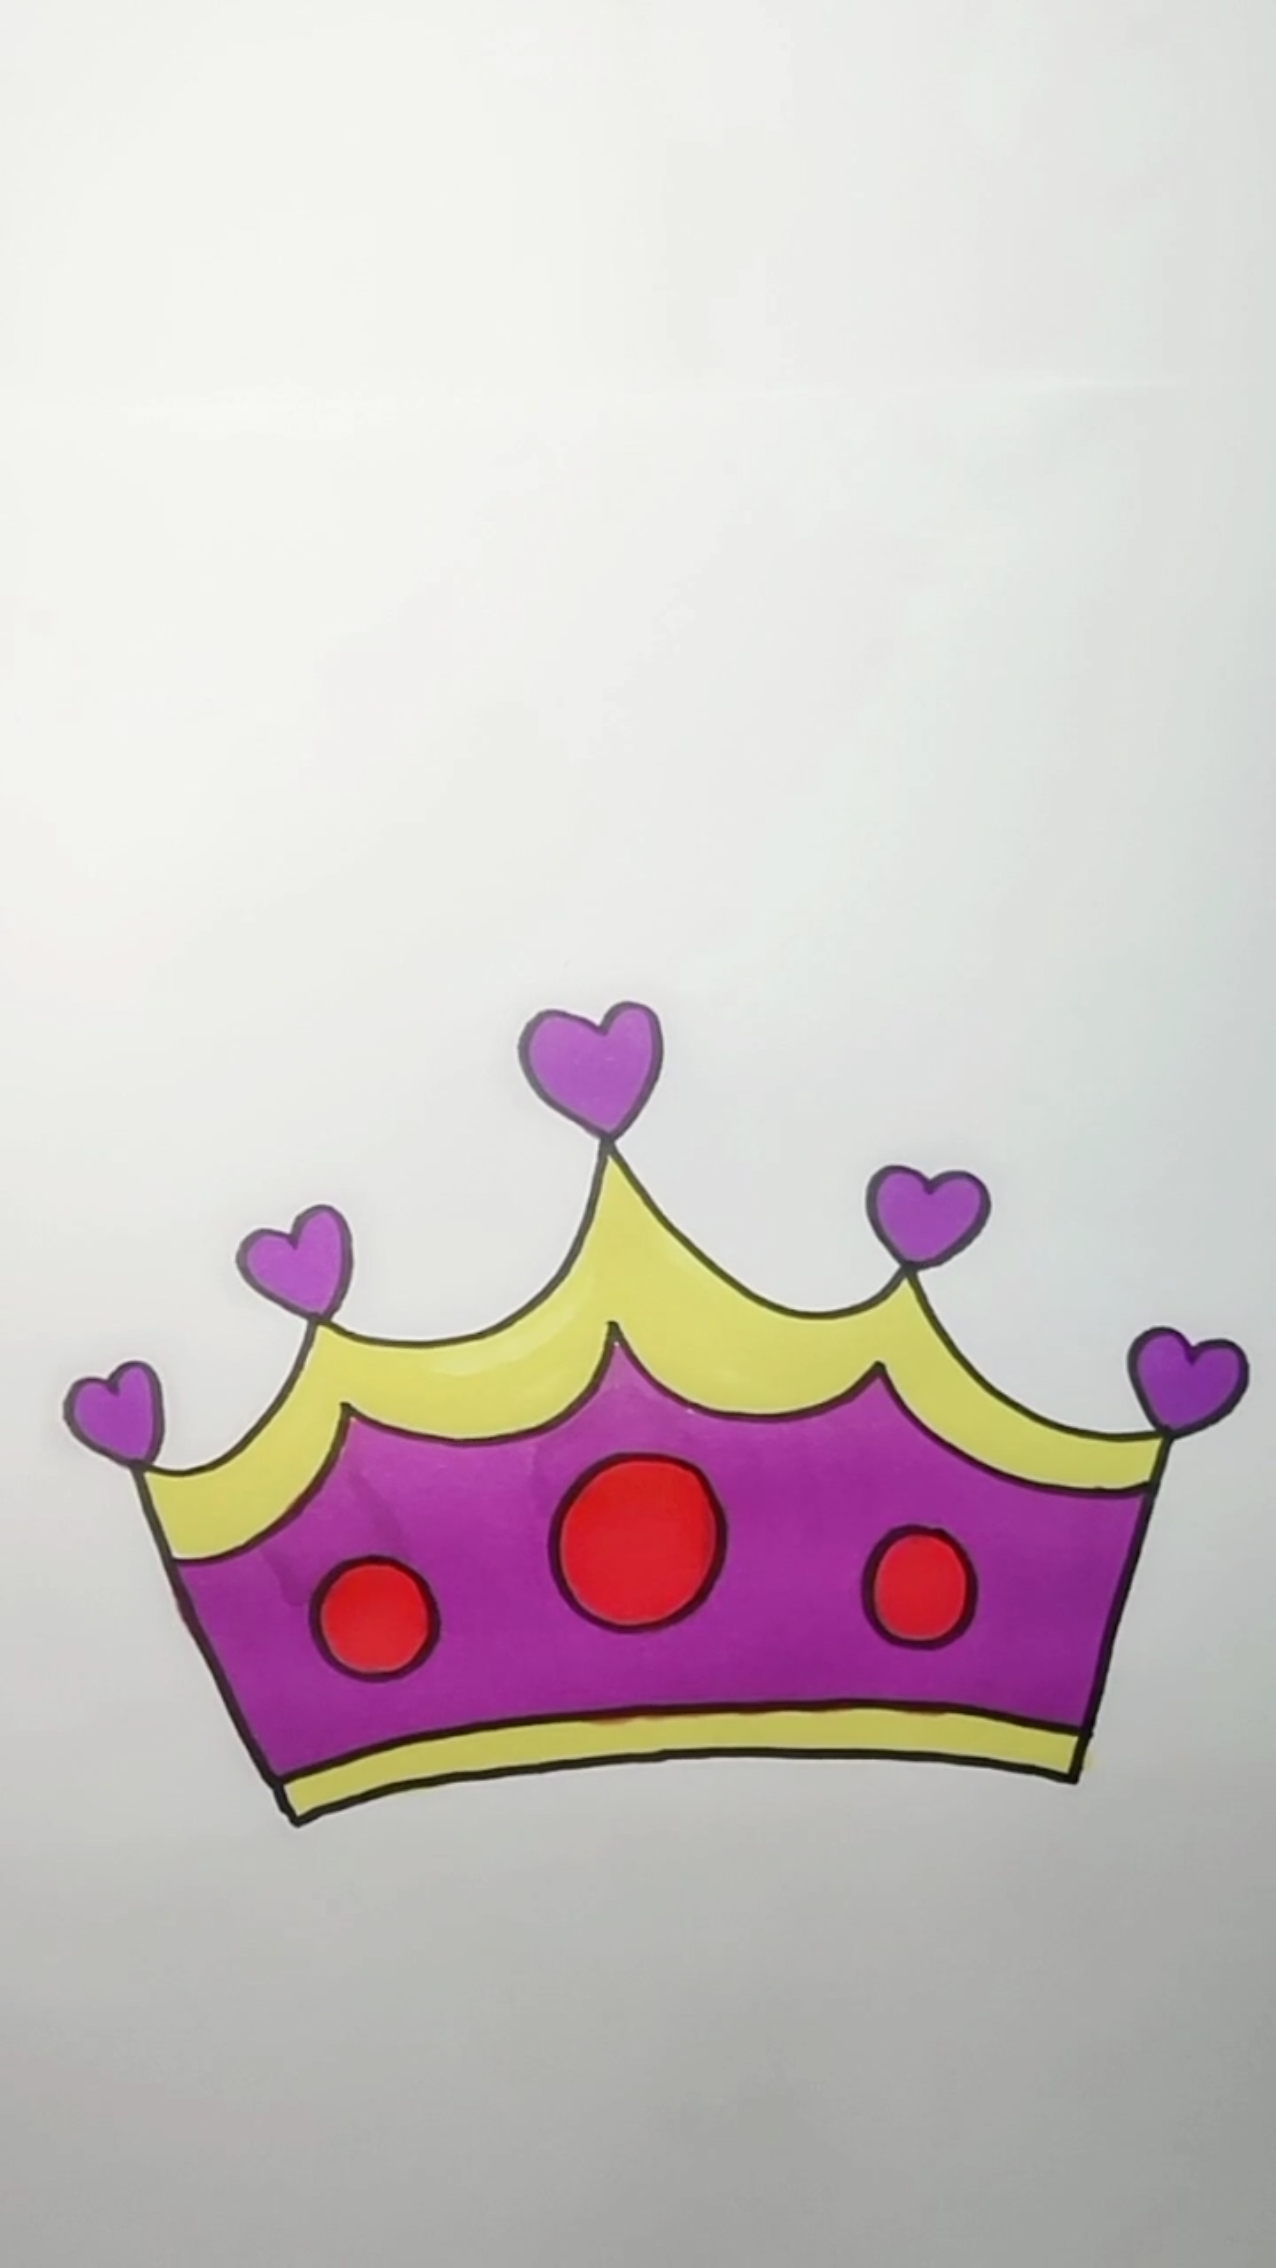 皇冠绘画简单漂亮图片